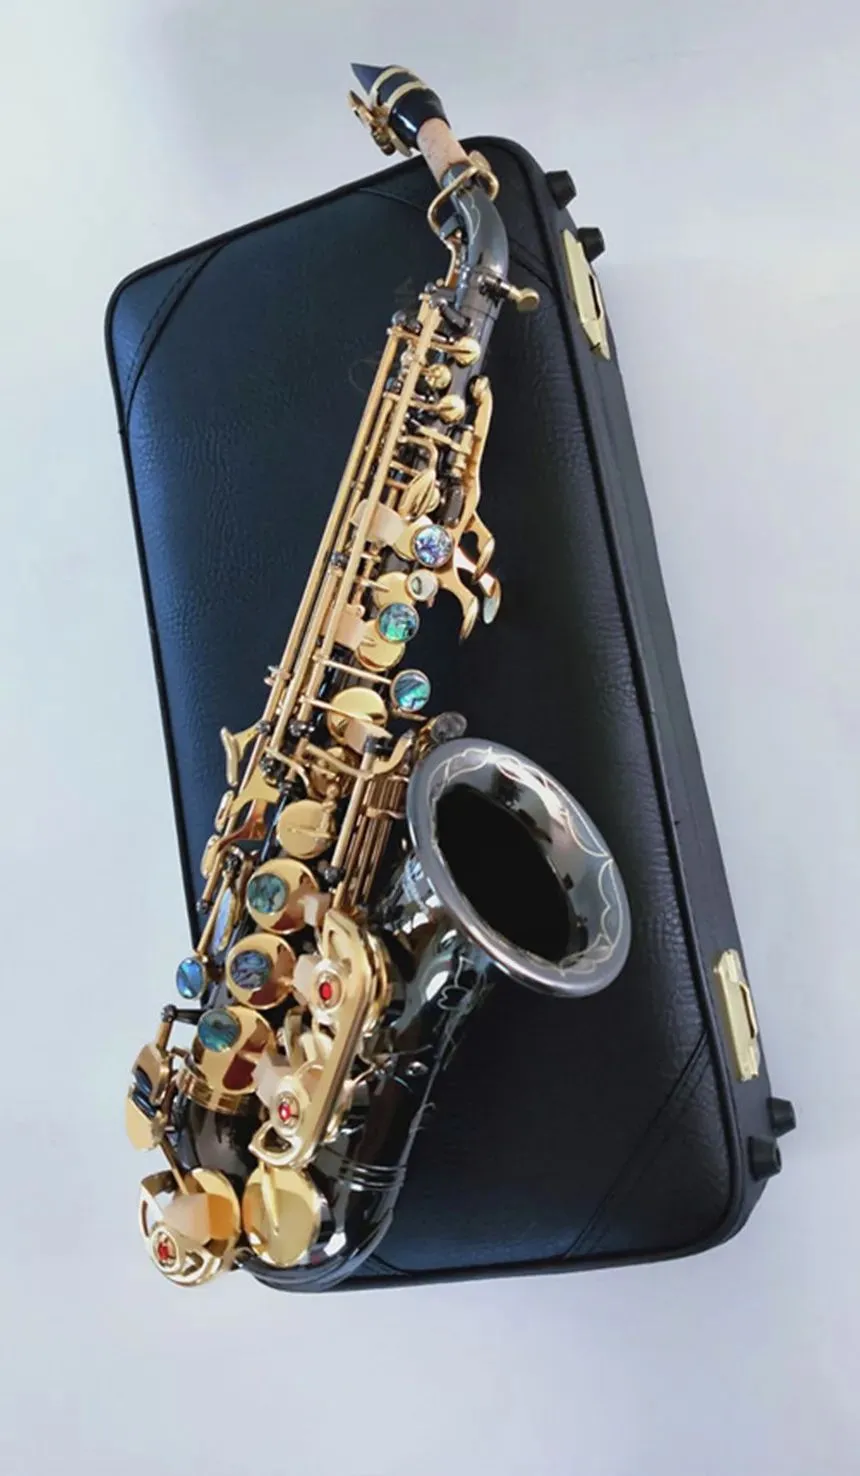 新しいブランドS-991 Bbtune楽器ゴールデンキー高品質の湾曲ソプラノサクソフォンとマウスピースAAA